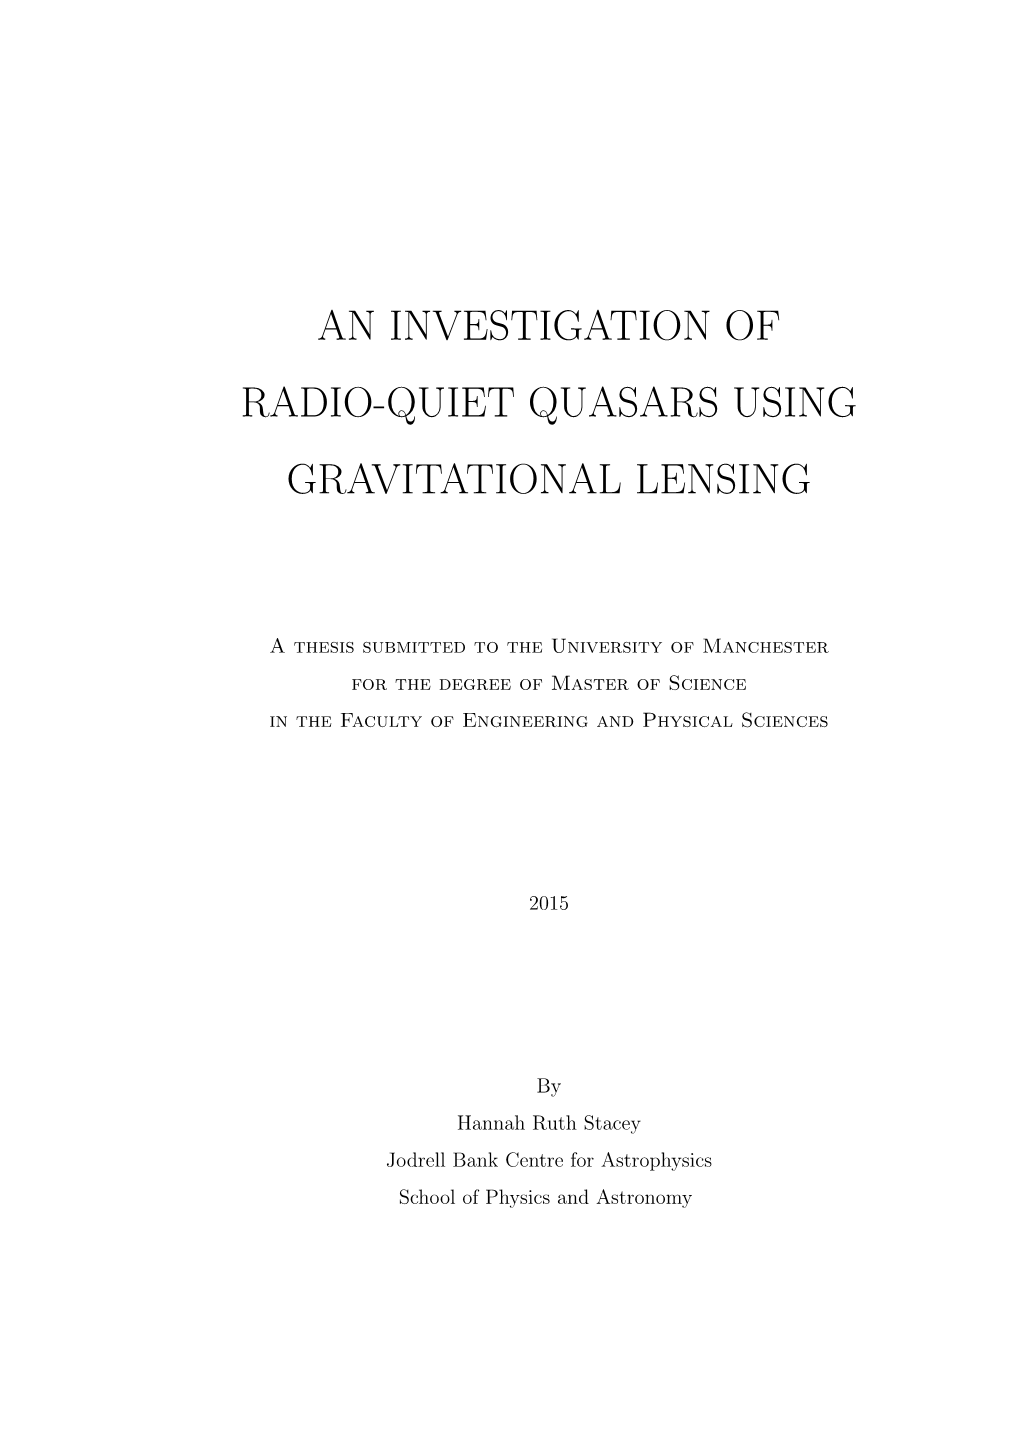 An Investigation of Radio-Quiet Quasars Using Gravitational Lensing